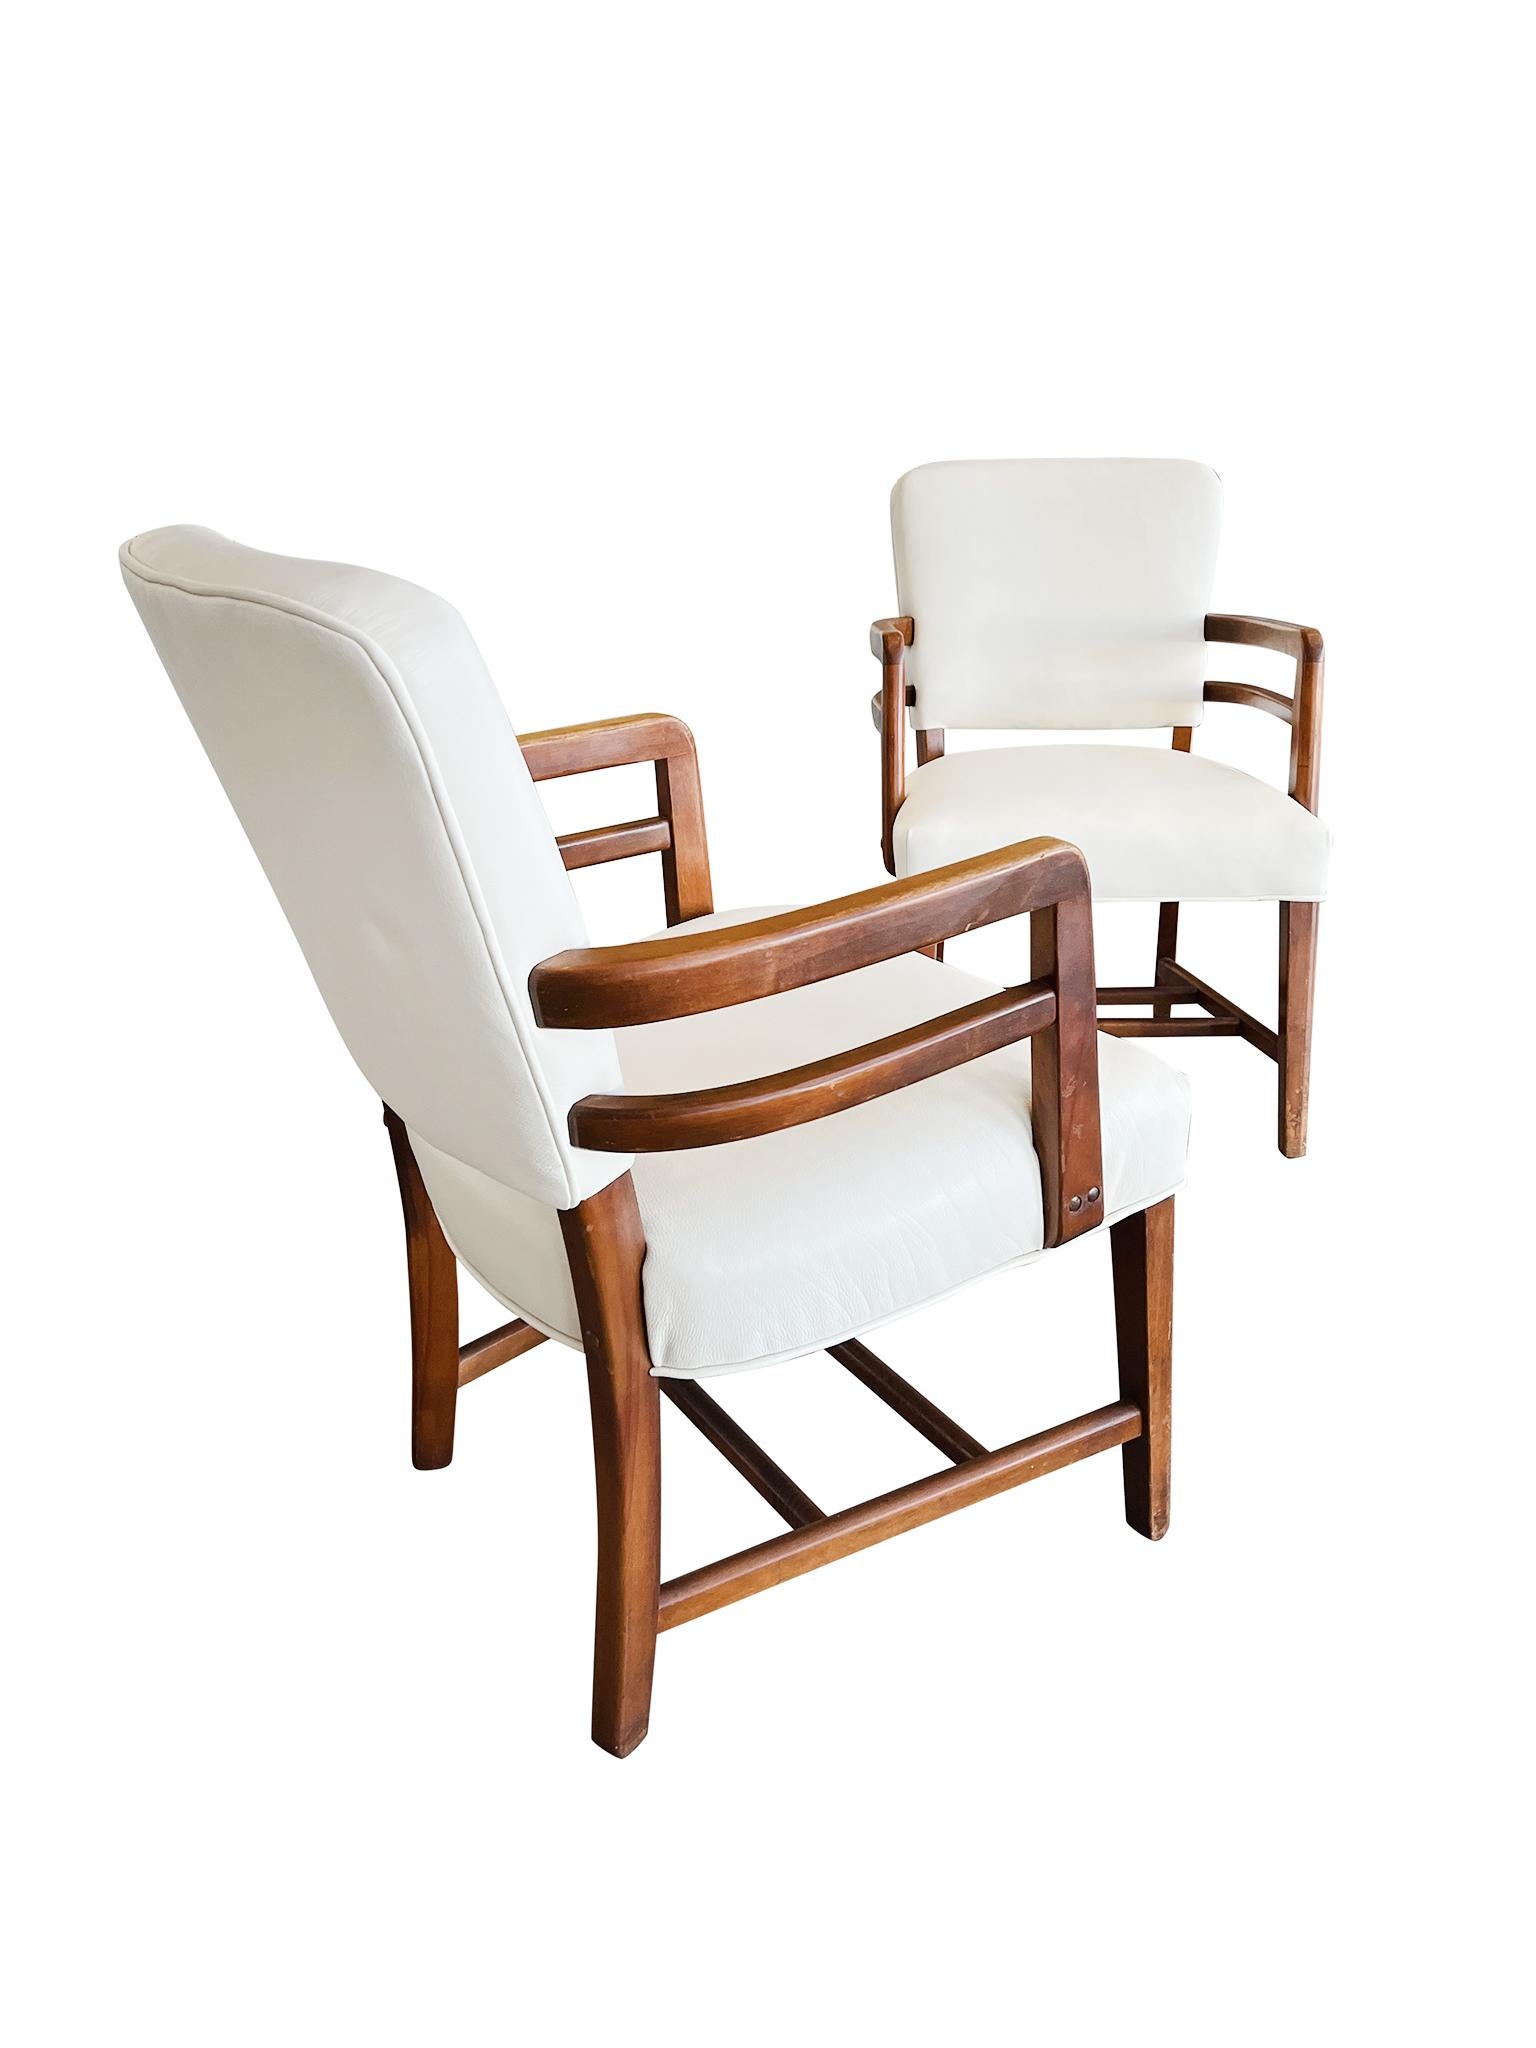 Exquisites Paar englischer Art-Déco-Sessel, die in den 1930er Jahren aus Buchenholz gefertigt wurden. Die Stühle sind neu gepolstert und mit austernweißem Leder bezogen, das die warmen Holztöne wunderbar ergänzt. Bemerkenswert ist die handwerkliche